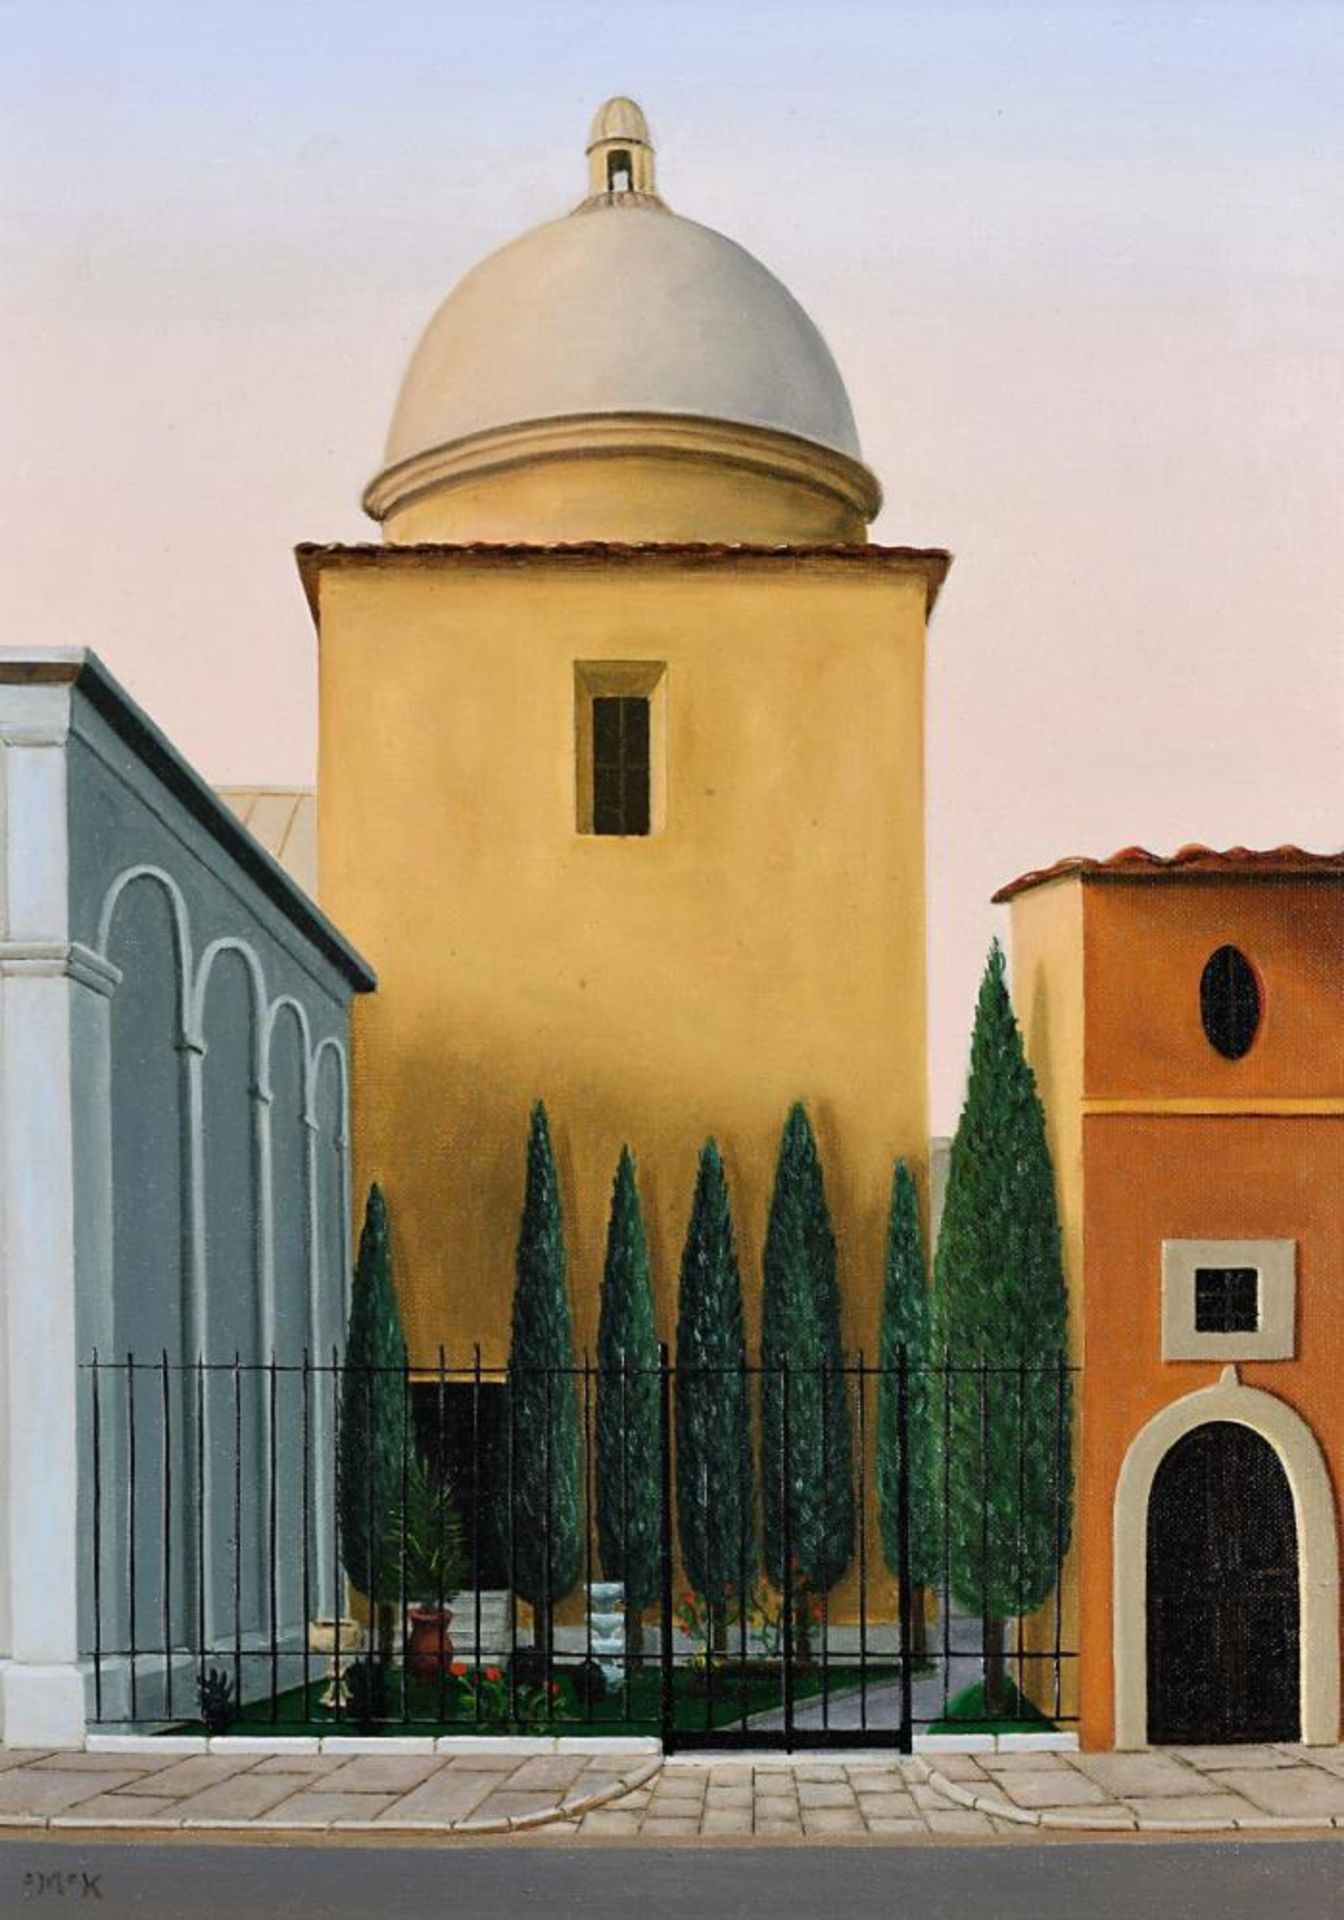 Italienische Häuser mit Zypressengarten